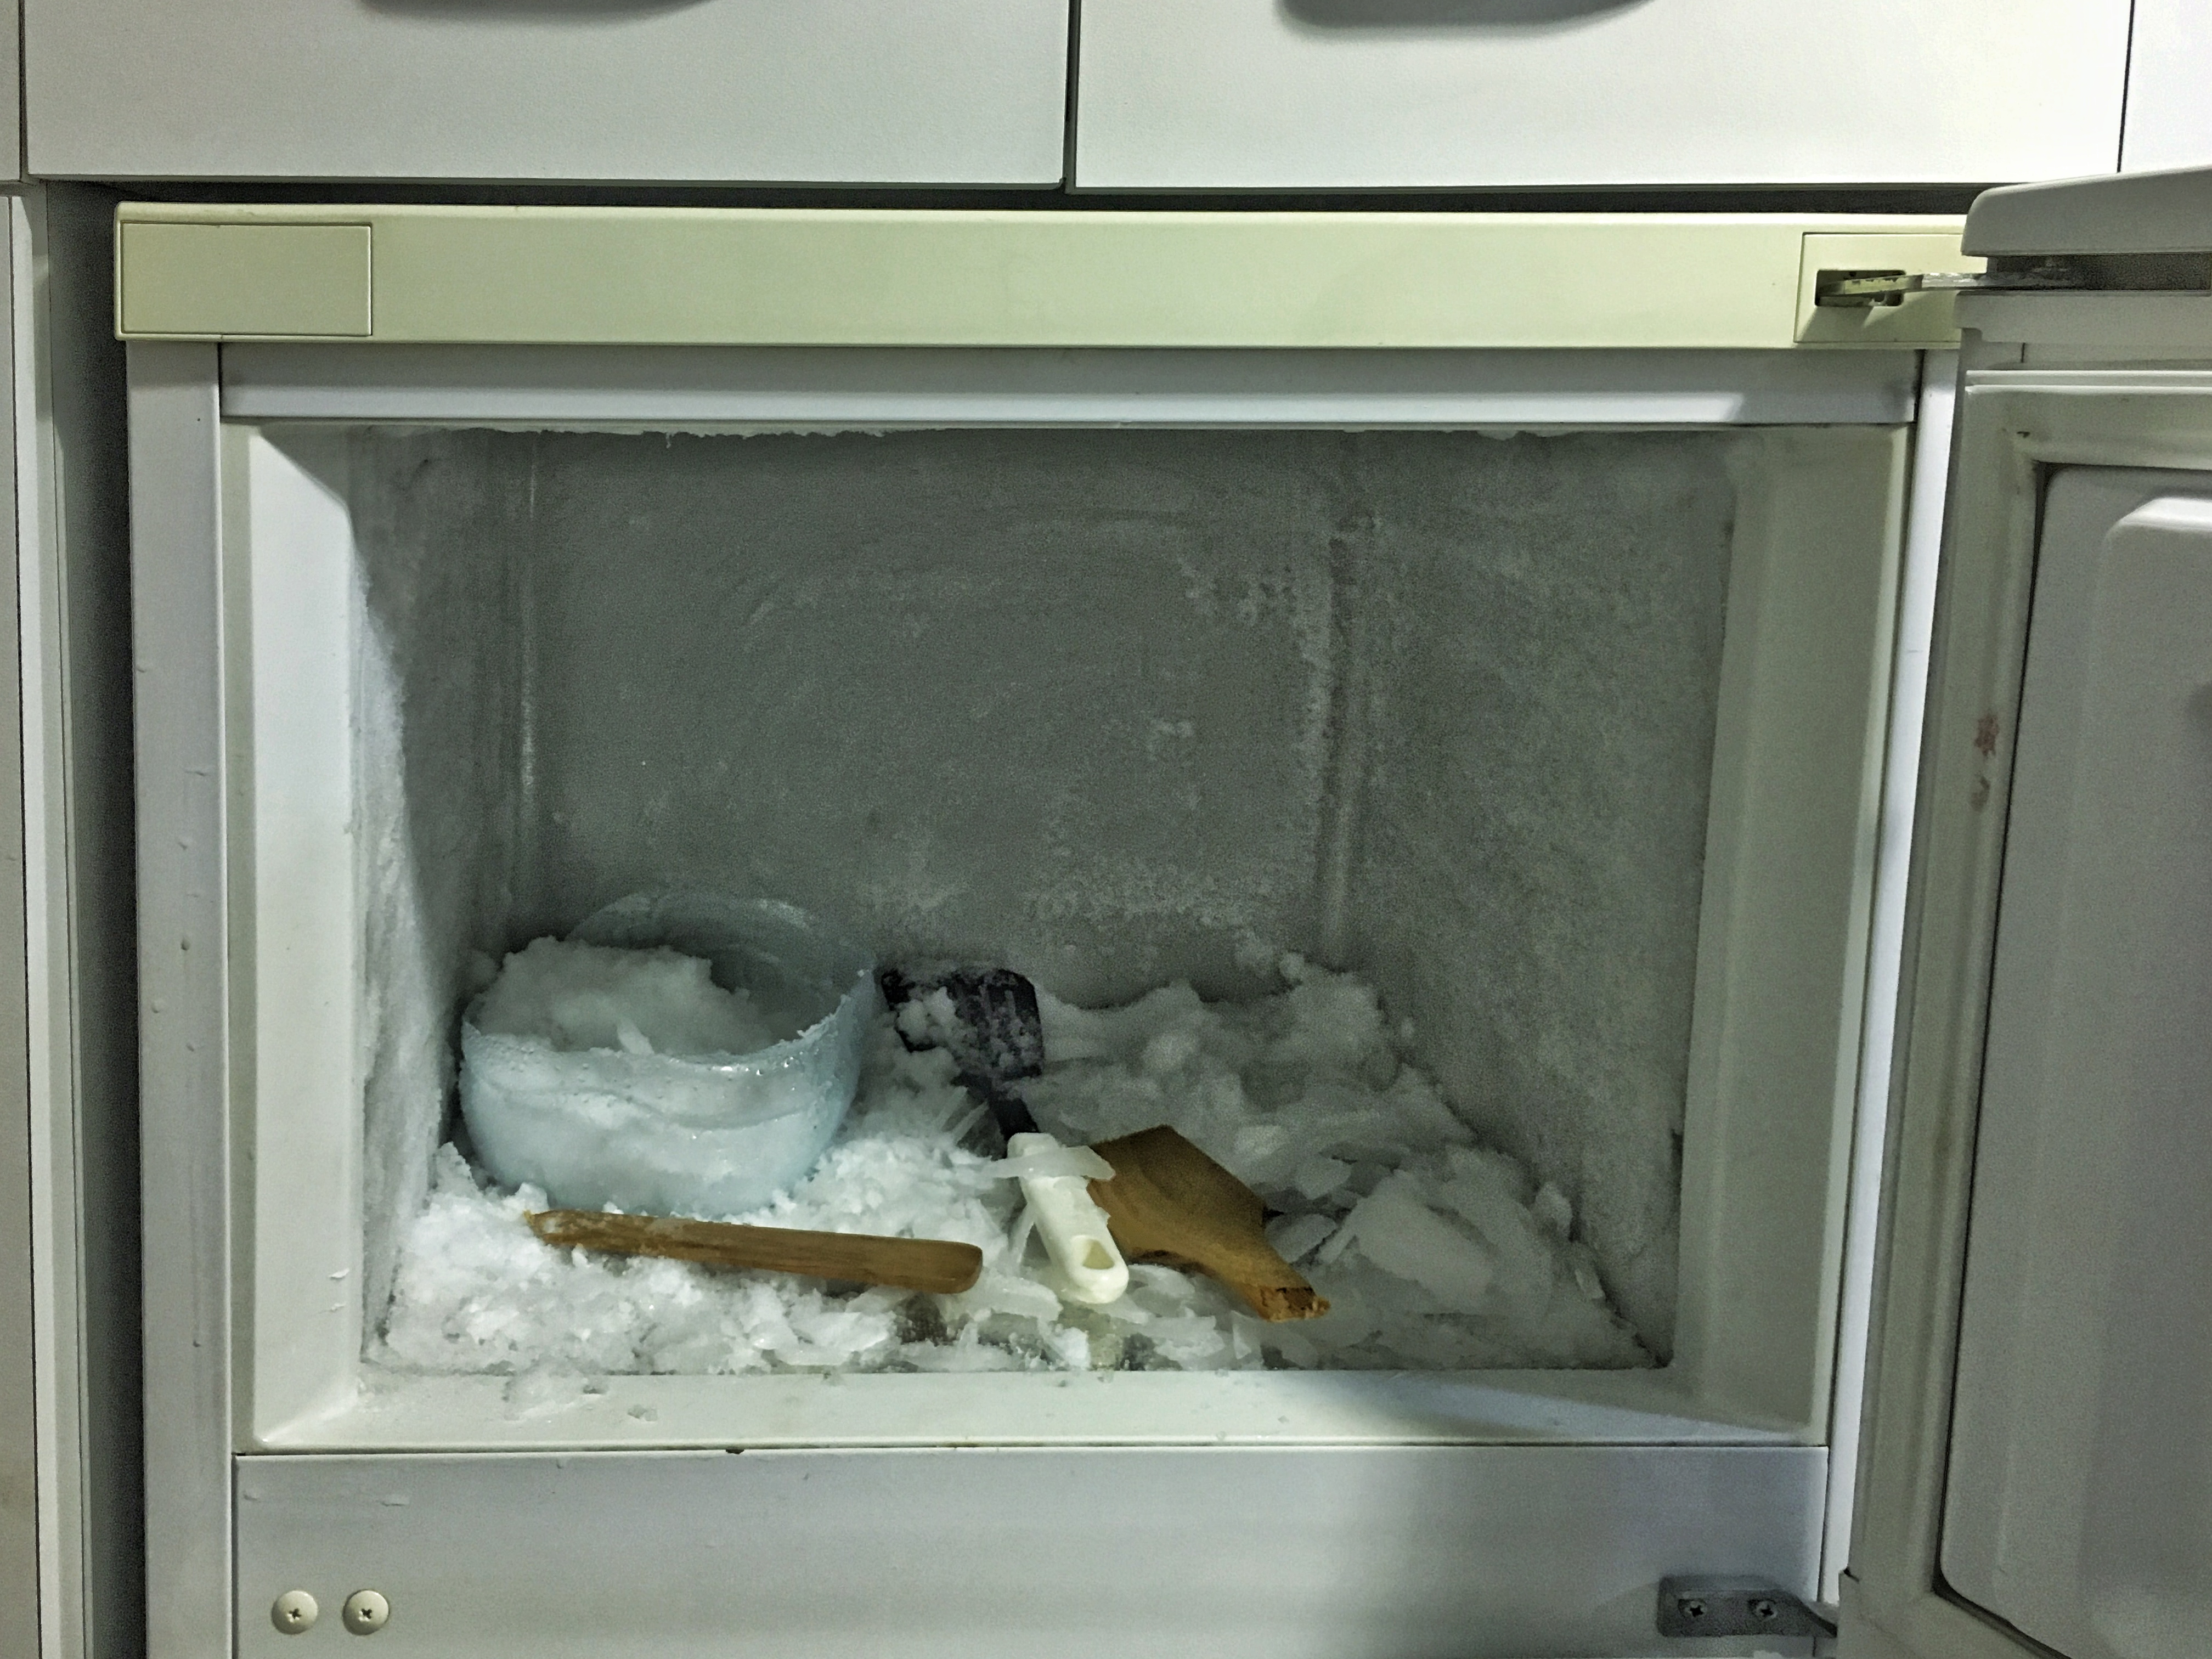 the frozen fridge compartment